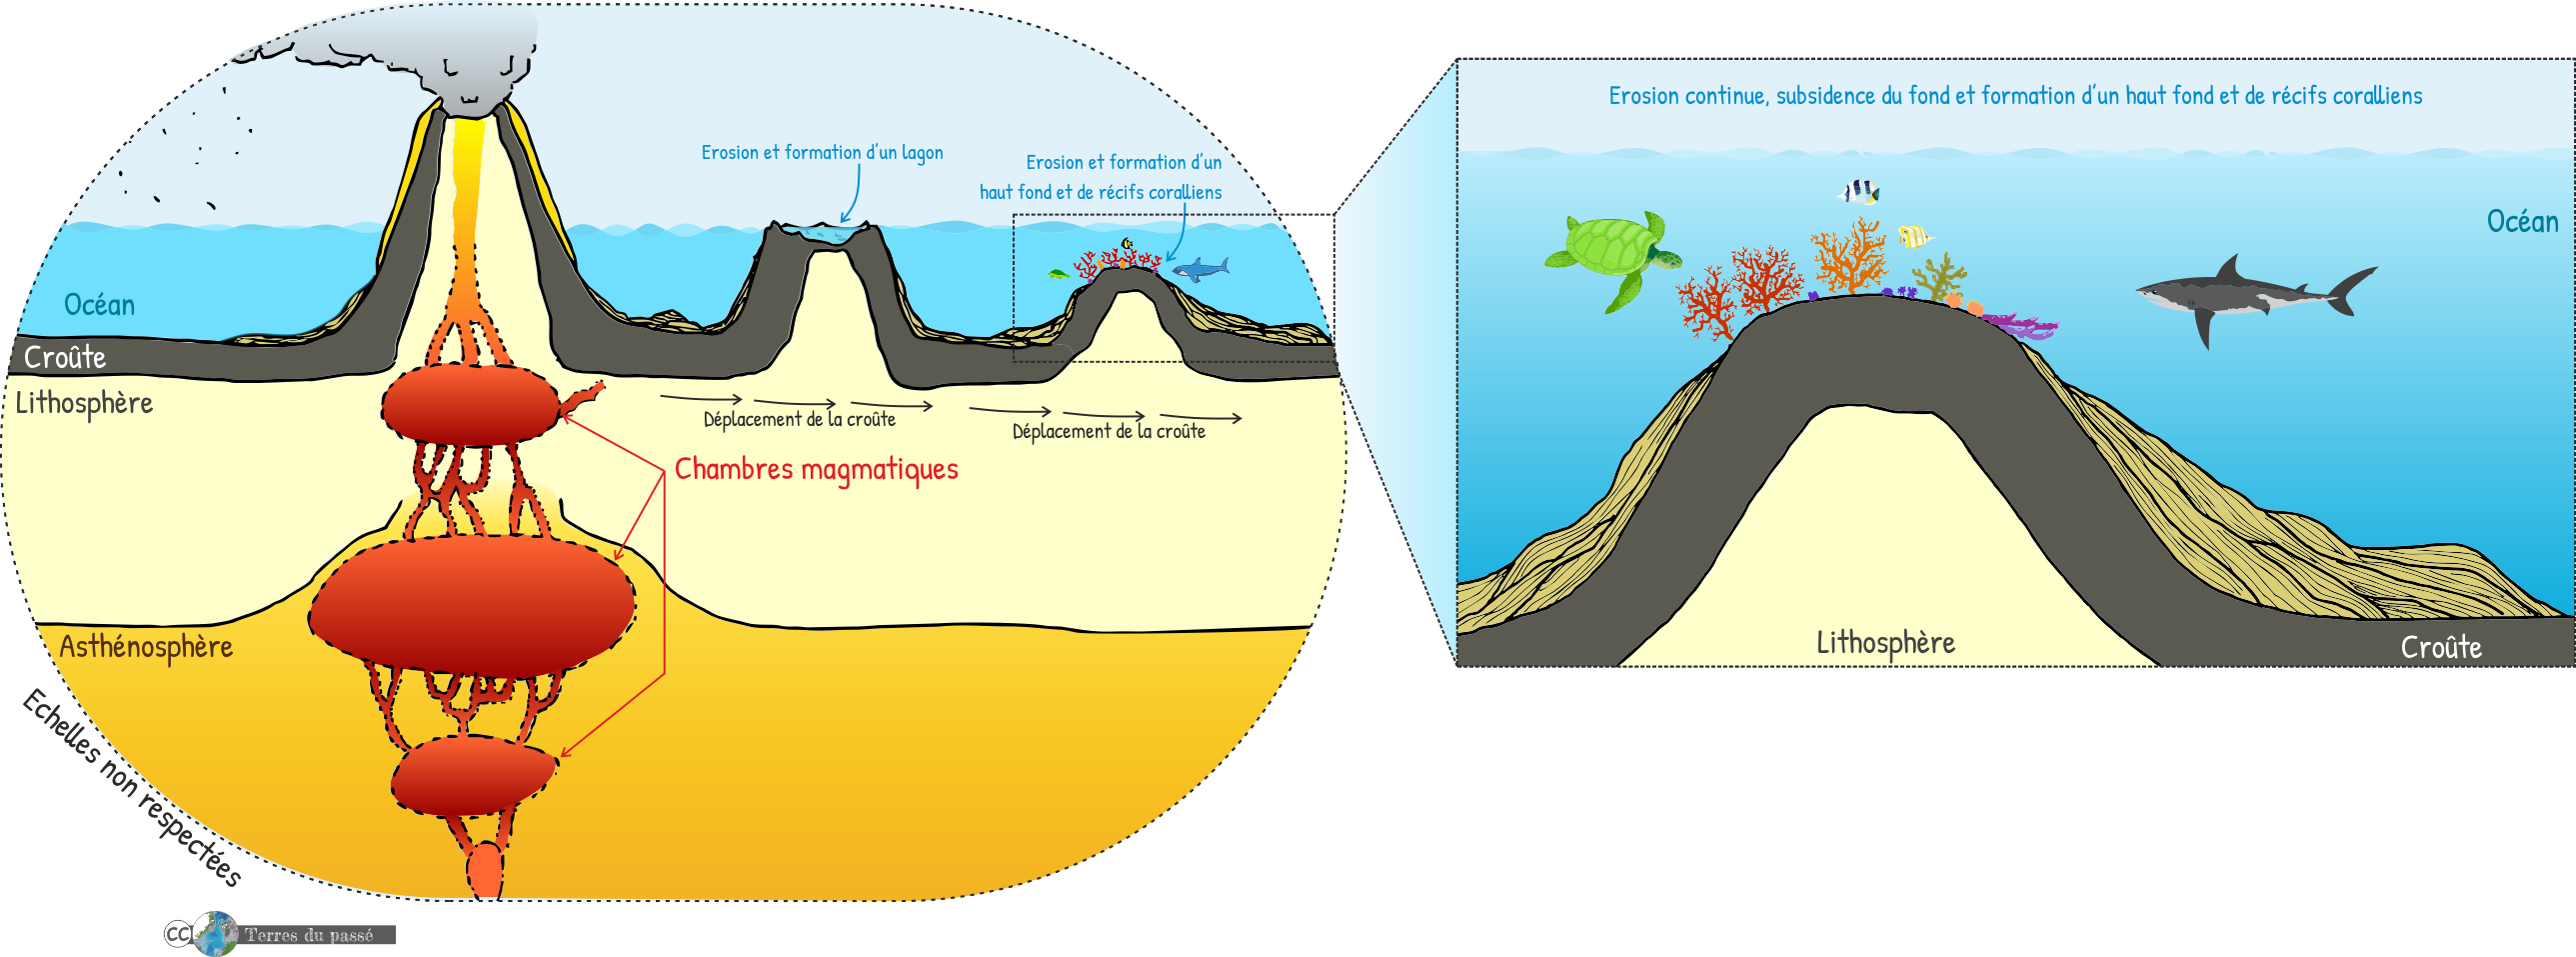 Volcanisme de point chaud, stade 3 : la croûte continue de se décaler, un nouveau volcan se forme, on parle de chaîne de monts sous-marins et d'archipel quand cela forme plusieurs îles, le plus ancien volcan est érodé et la croûte océanique, vieille et lourde, subside, donc s'enfonce, ce qui fait que le premier volcan devenu un atoll devient ensuite un haut fond permettant le développement de récifs coralliens. 